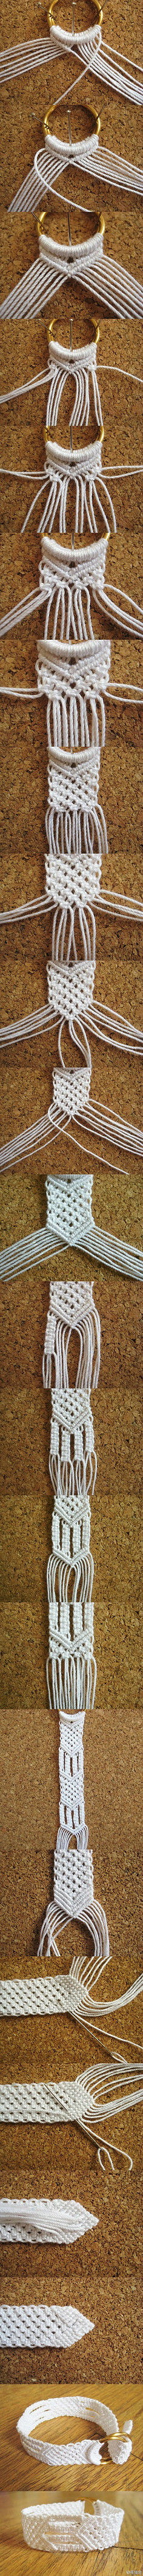 接着上面的编织绳,棉绳编织女生手镯/腰带…